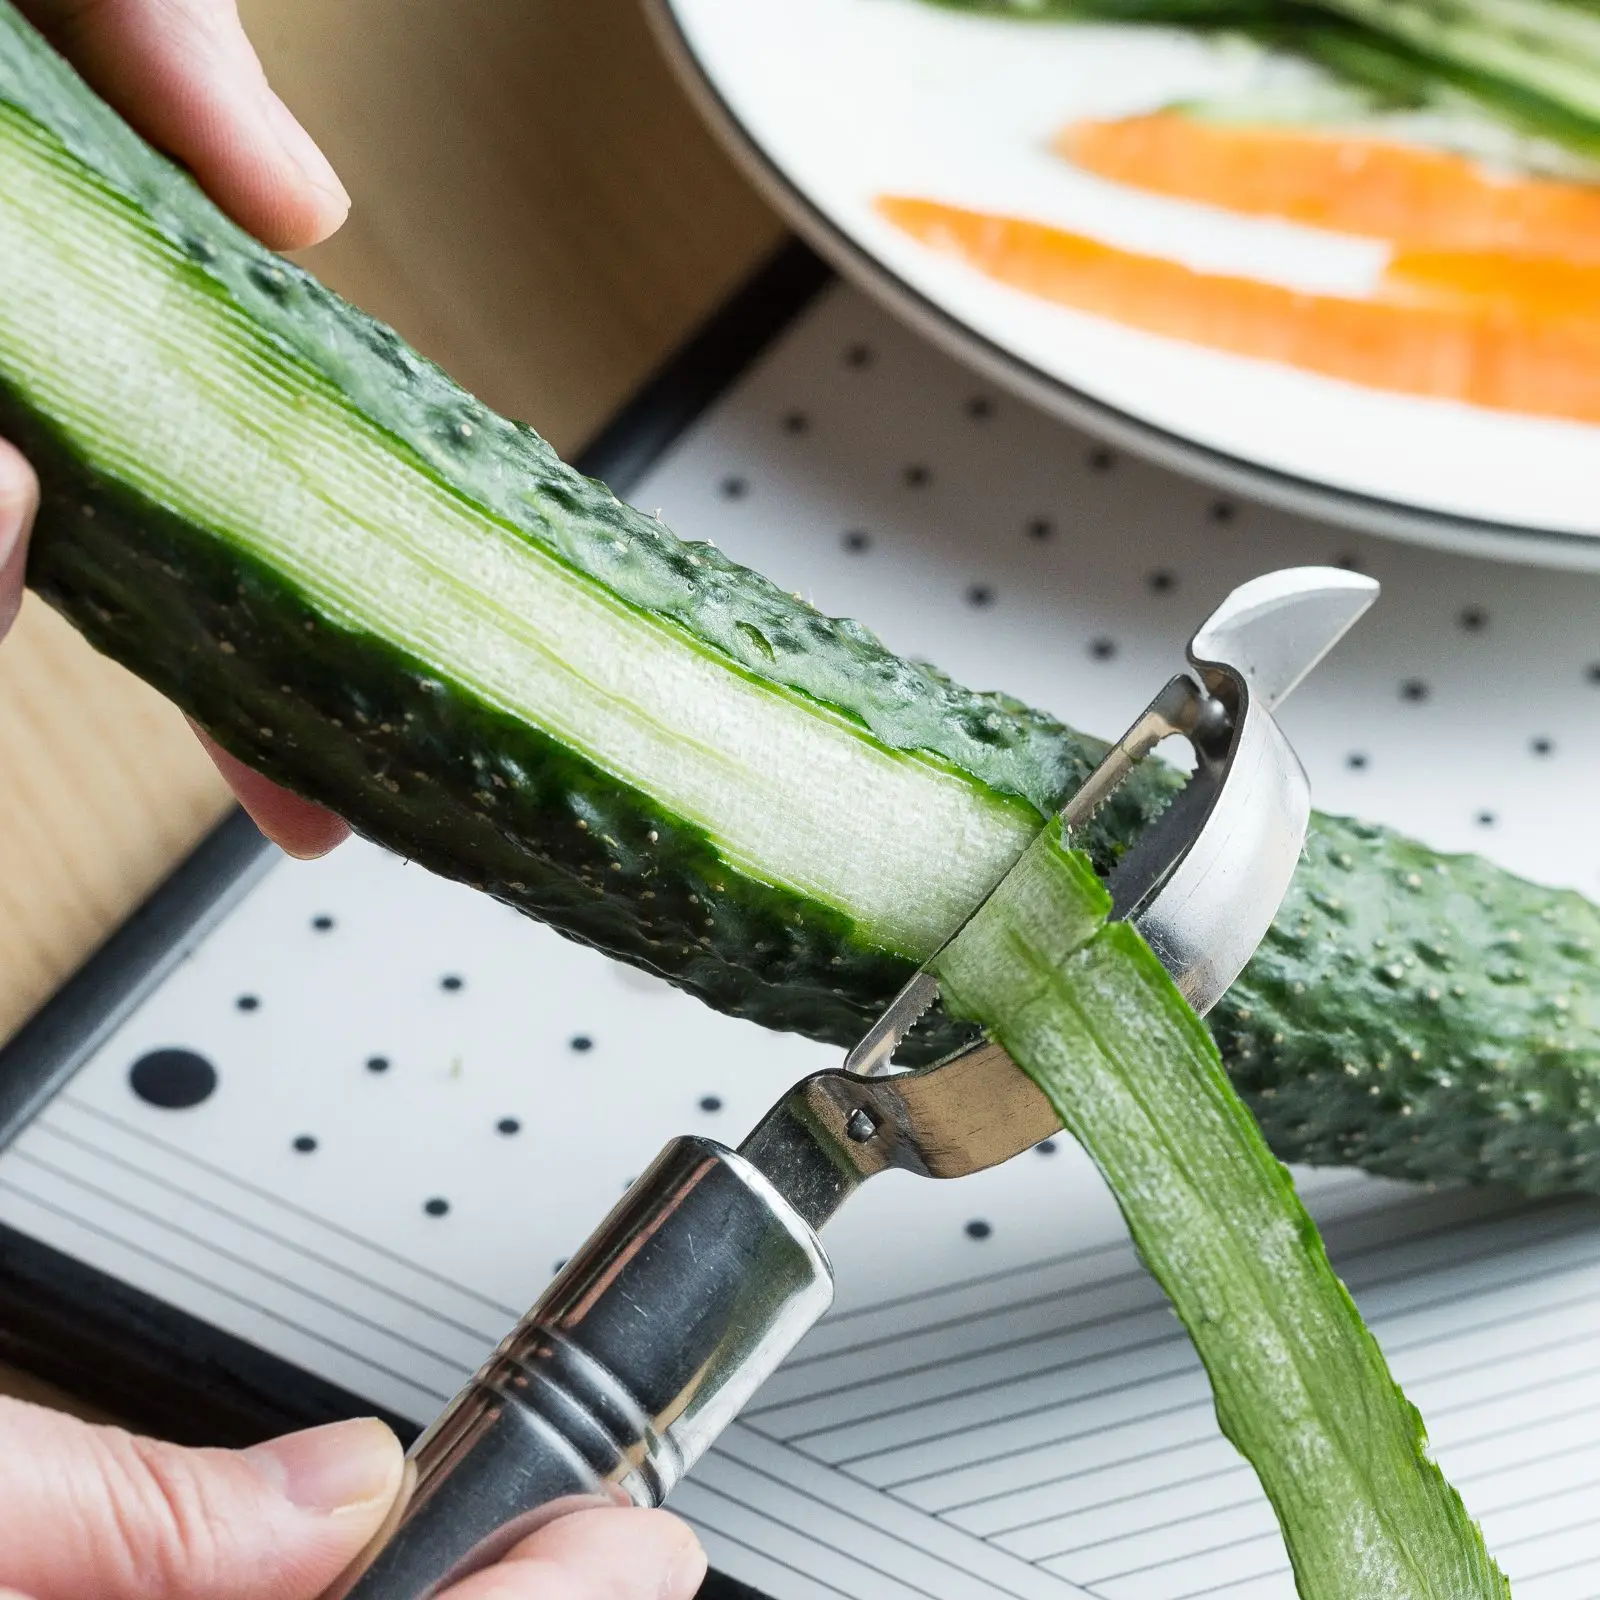 https://ae01.alicdn.com/kf/S6853dab3bf8441af9cc1c581a337aee72/New-Stainless-Steel-Vegetable-Peeler-Multi-function-Julienne-Potato-Cucumber-Carrot-Grater-Fruit-Cutter-For-Kitchen.jpg